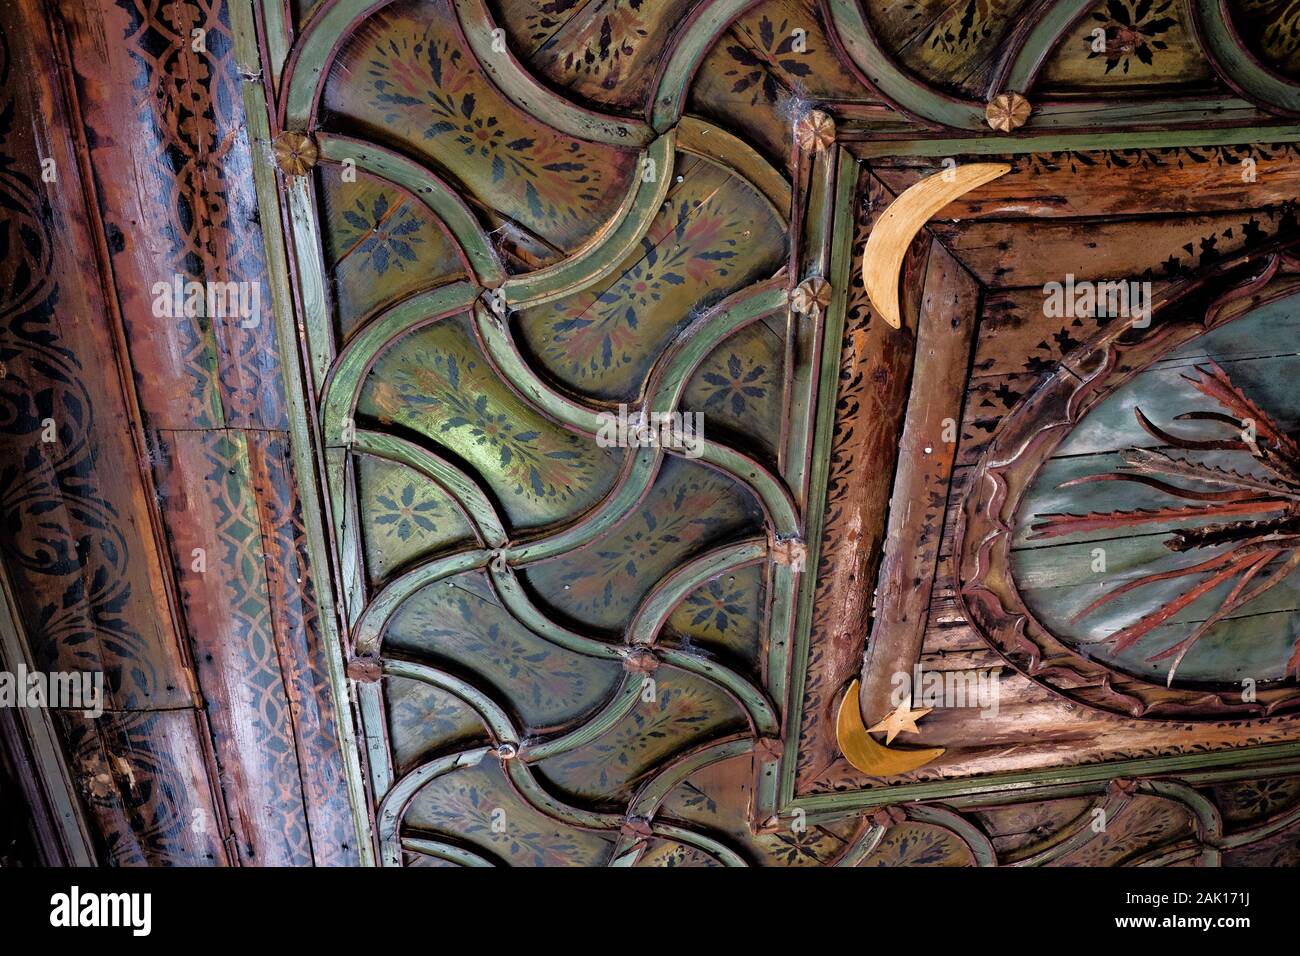 Détail d'un plafond à l'intérieur de l'Blagaj Tekija, un monastère de l'ère ottomane près de Mostar, Bosnie-Herzégovine Banque D'Images